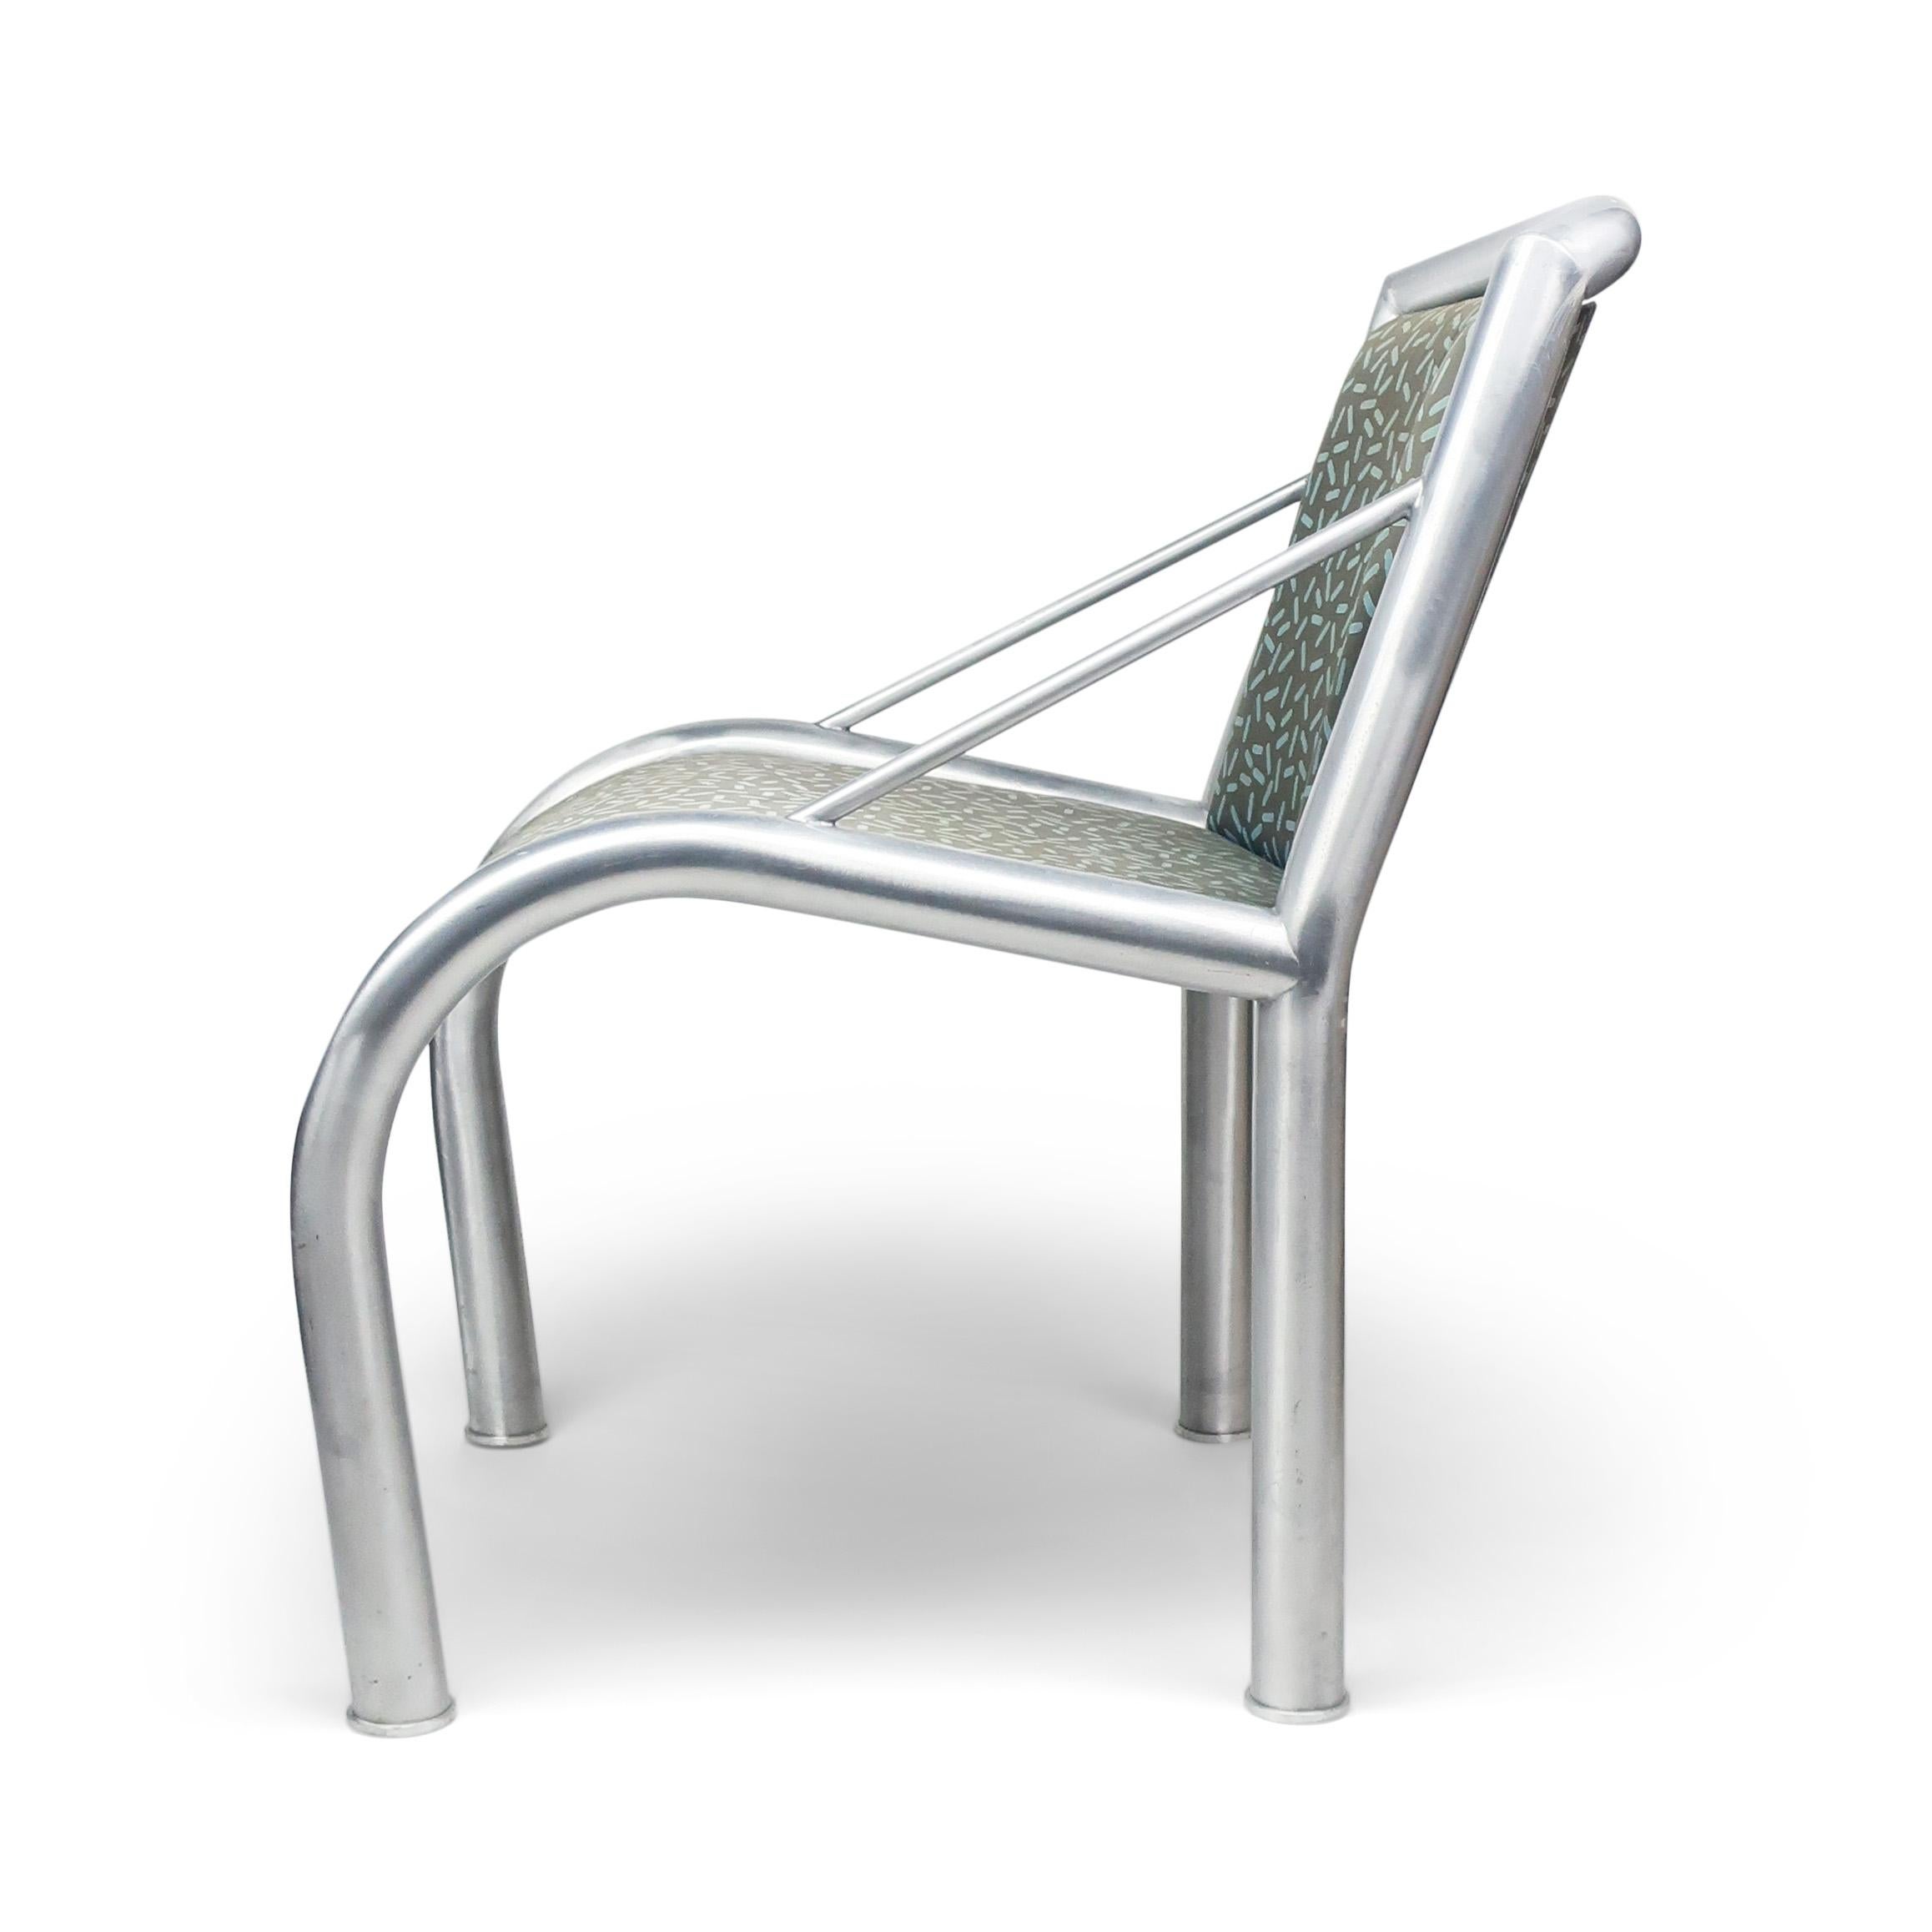 Ein Sessel aus Aluminium, entworfen von Marco Zanini für Memphis Milano im Jahr 1984 und bezogen mit Letraset, einem Baumwollstoff von Ettore Sottsass. 

Signiert auf der Unterseite des Sitzes. In gutem Vintage-Zustand mit alters- und